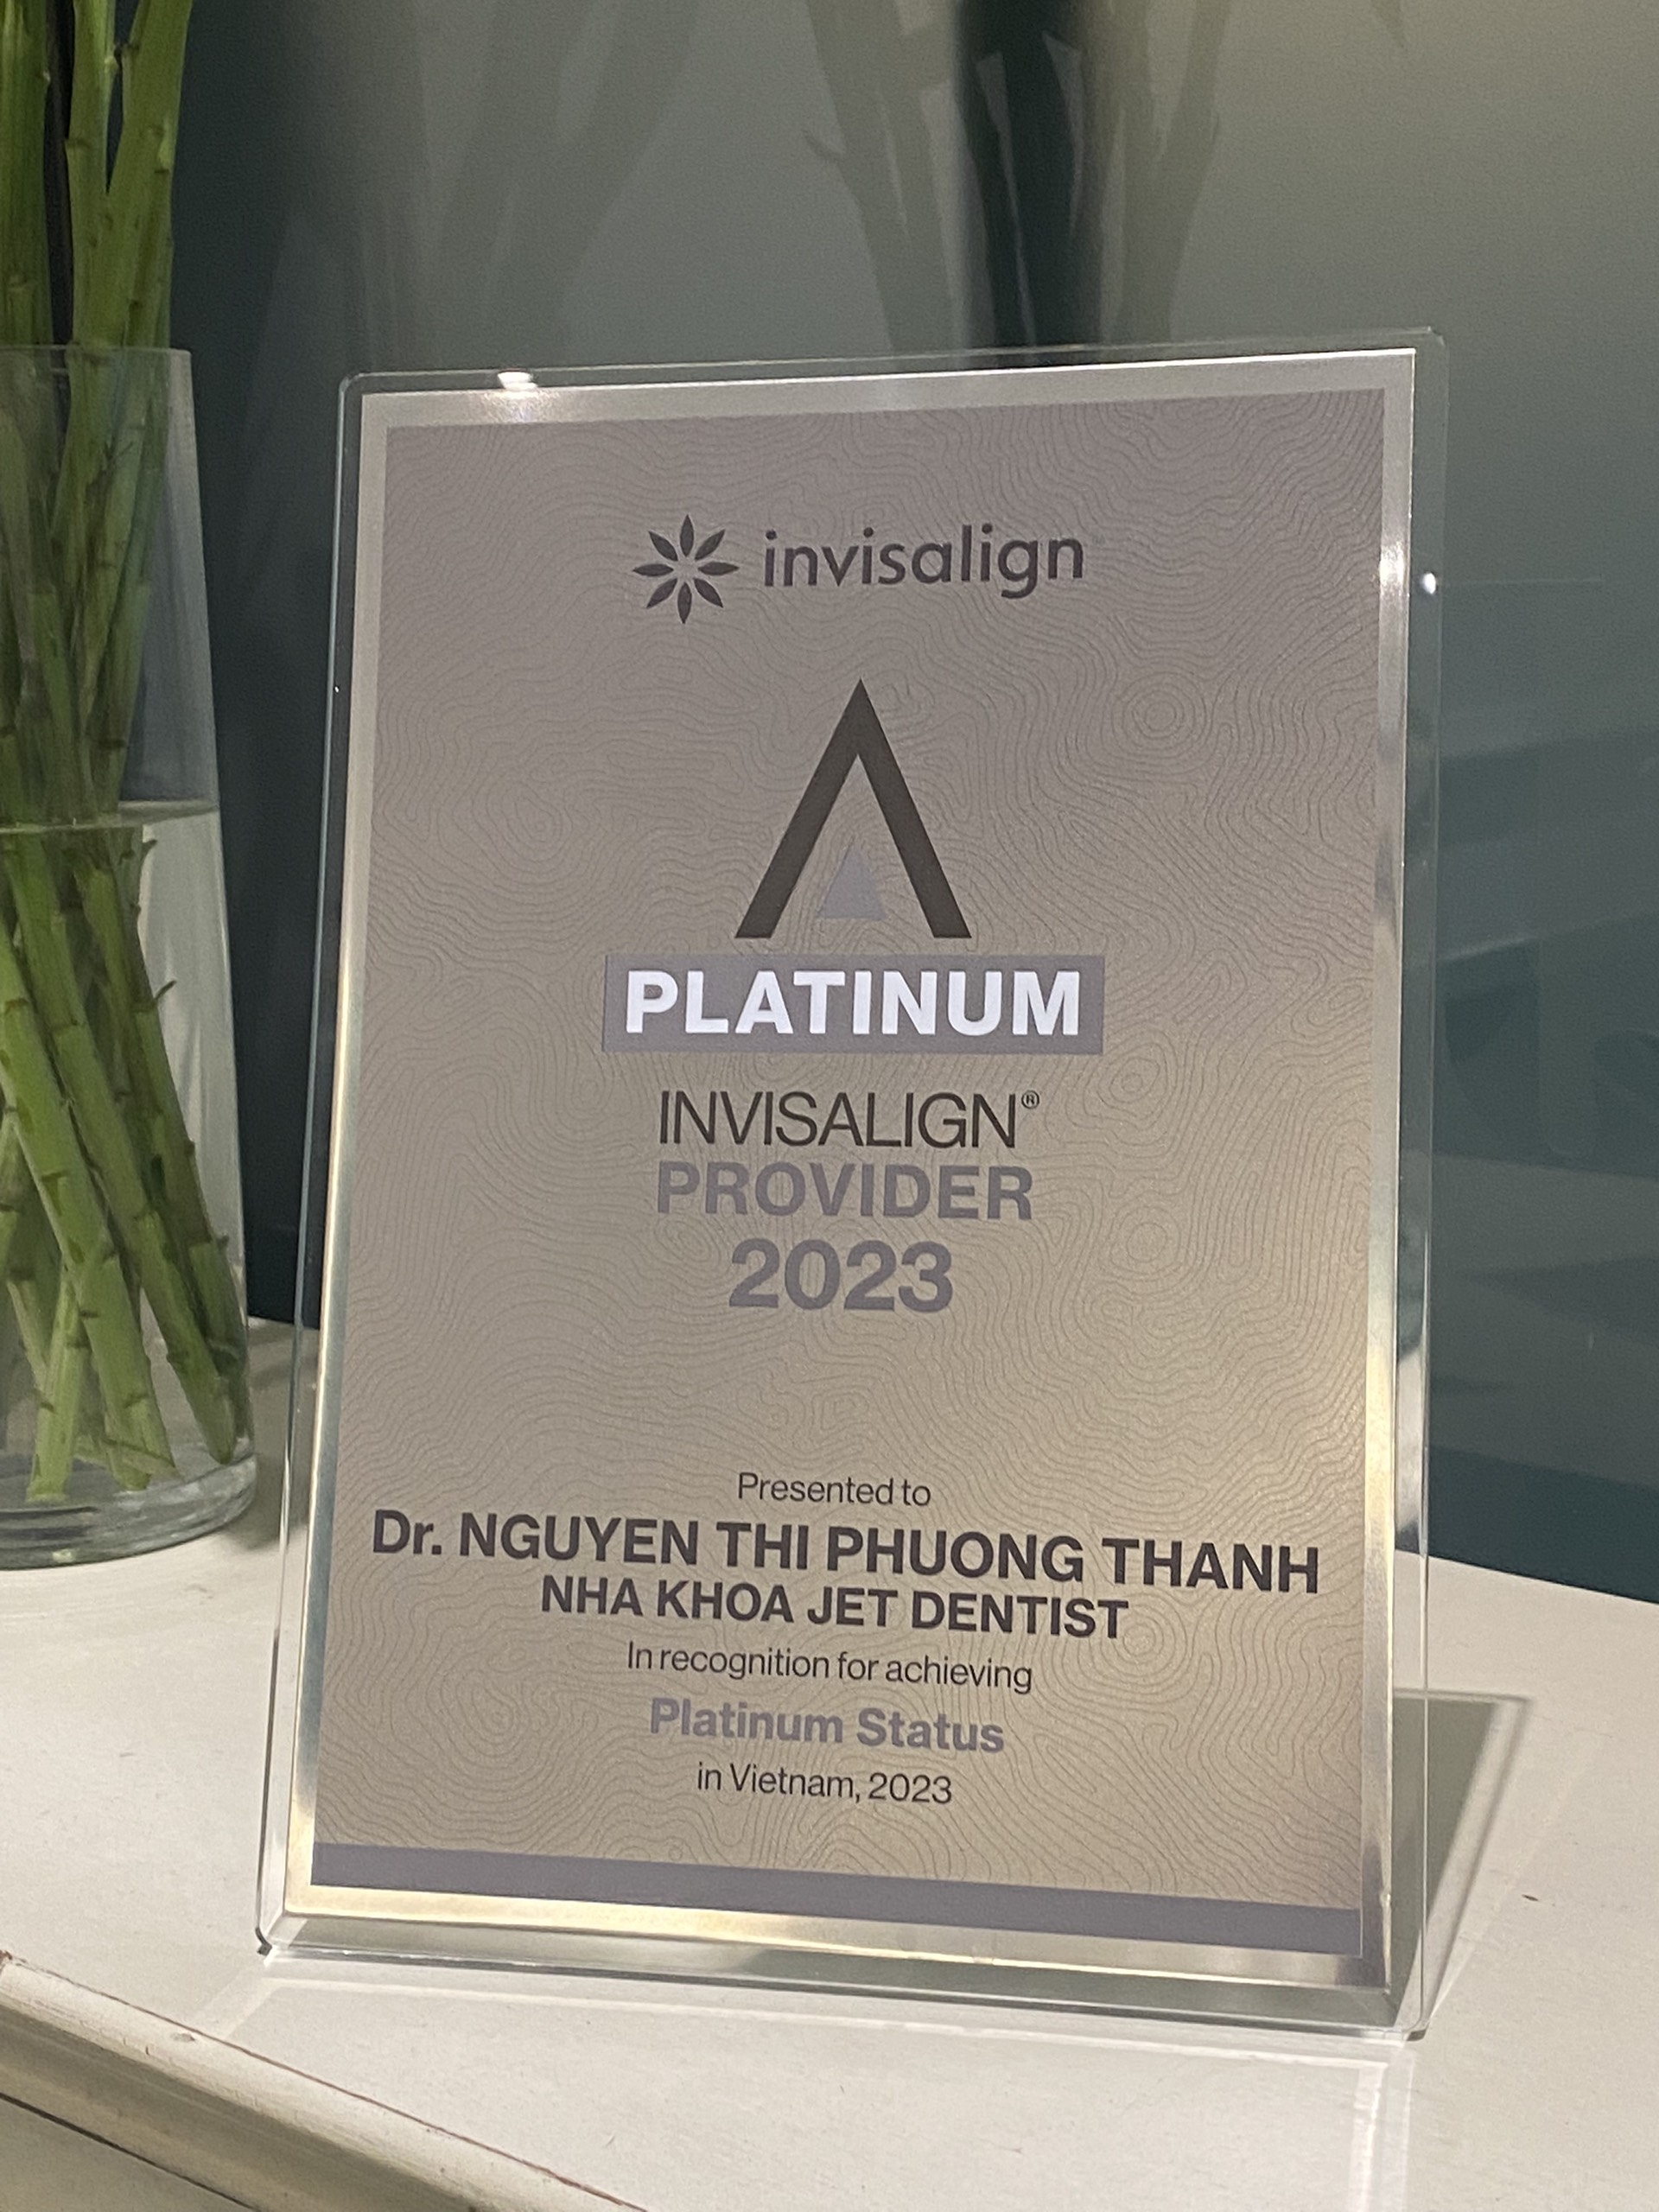 Bác sĩ Phương Thanh được trao danh hiệu INVISALIGN PLATINUM PROVIDER